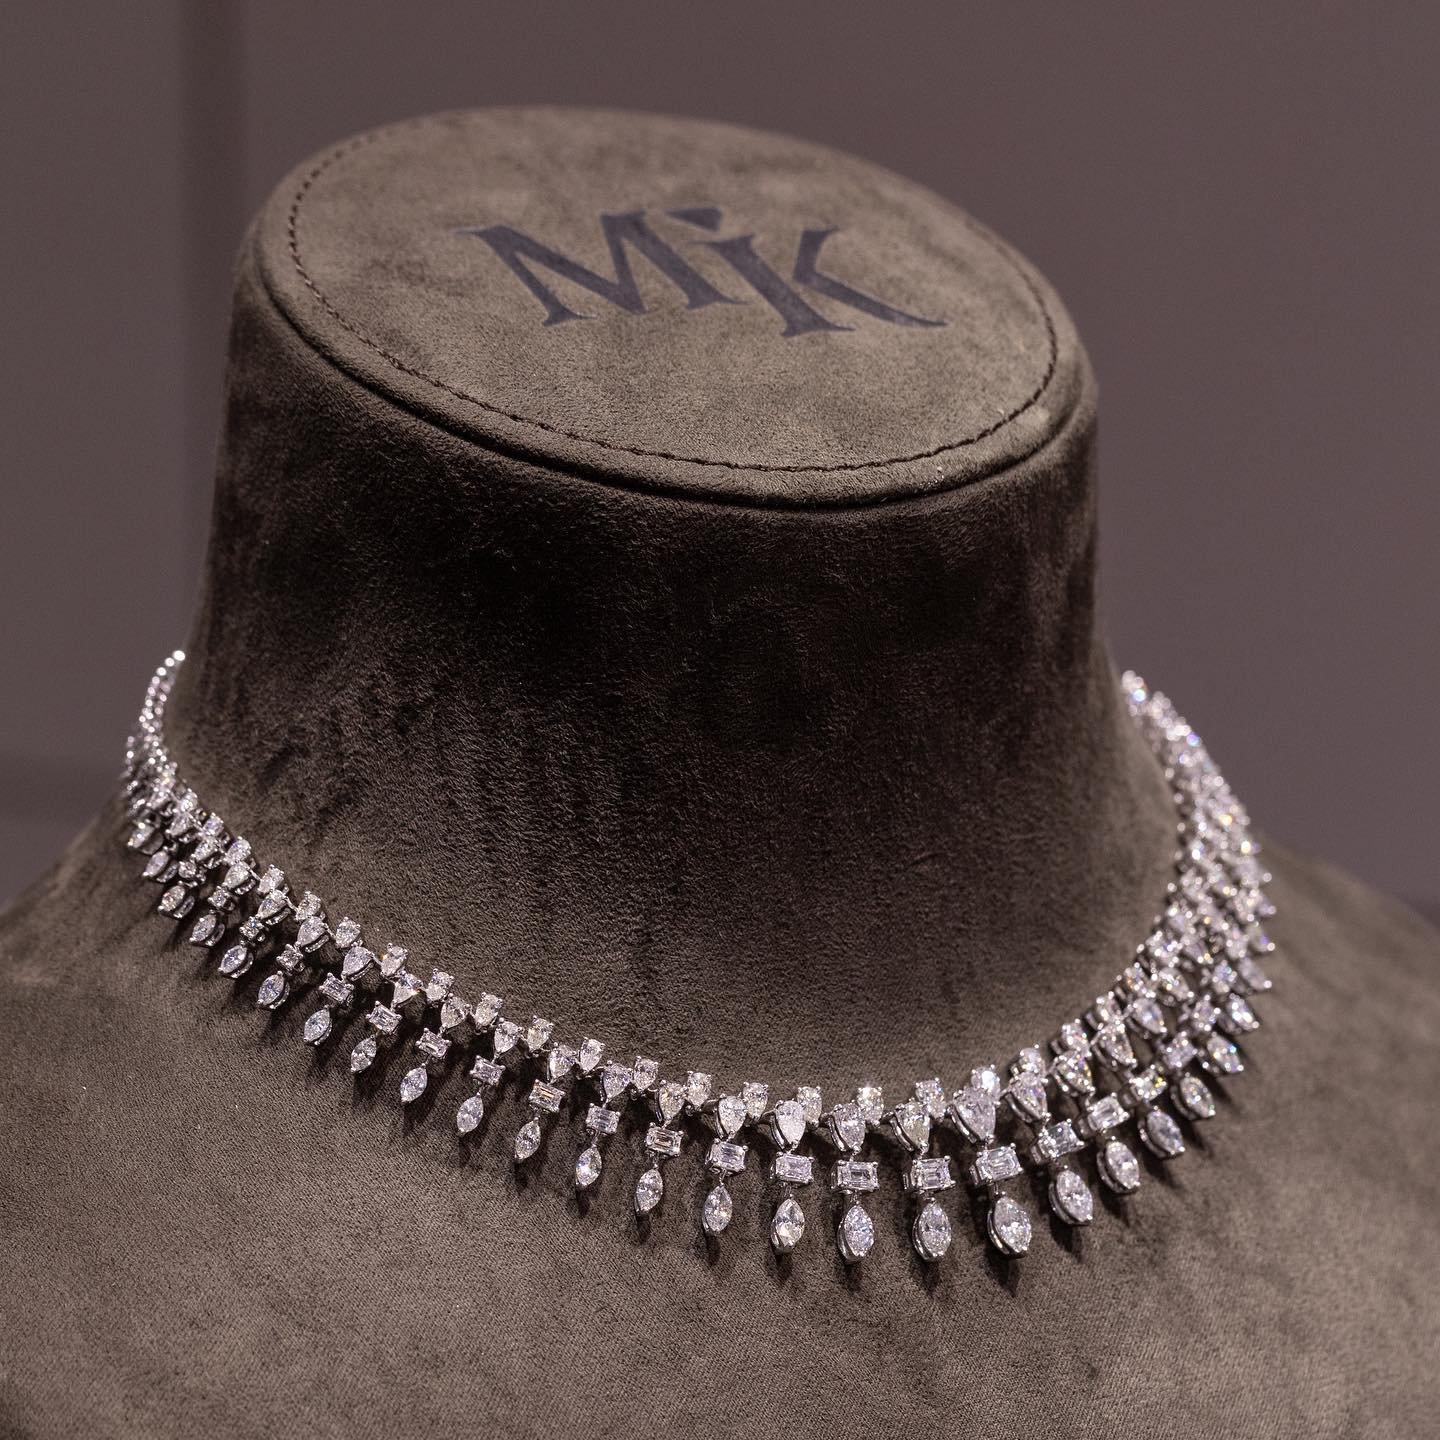 دار MK Jewellery في معرض الجواهر العربية 2022